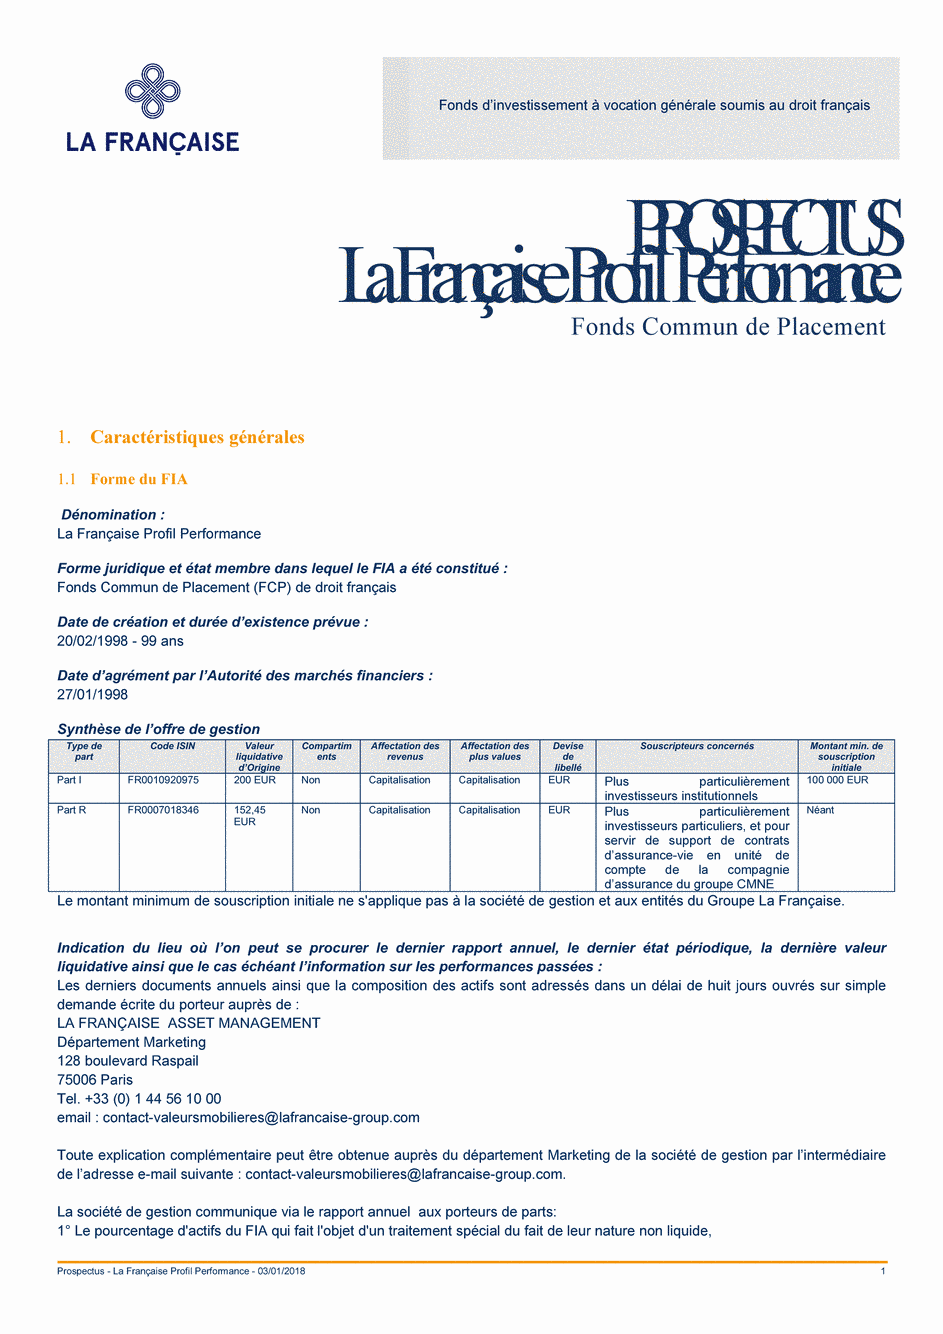 Prospectus LA FRANCAISE PROFIL PERFORMANCE I - 03/01/2018 - Français